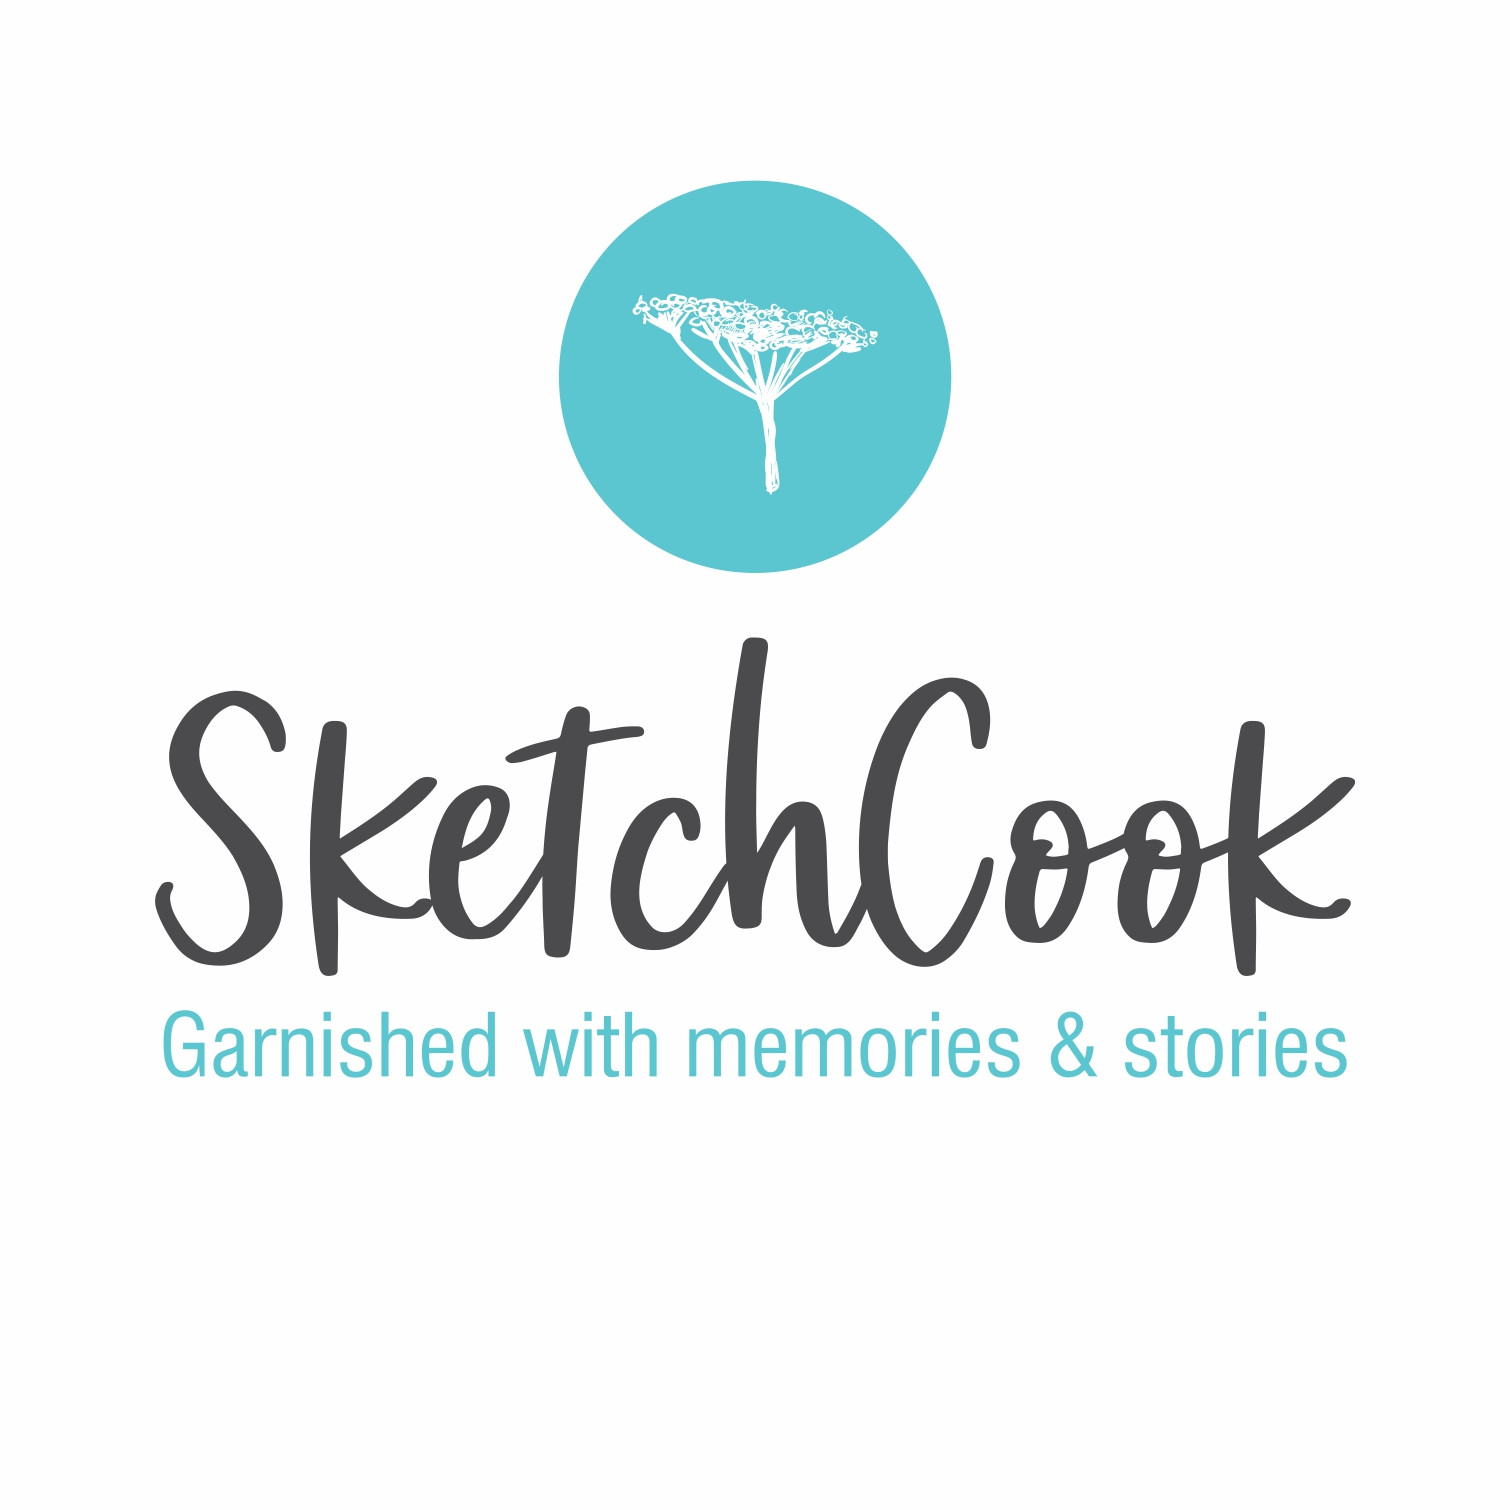 SketchCook Garnished with memories & stories